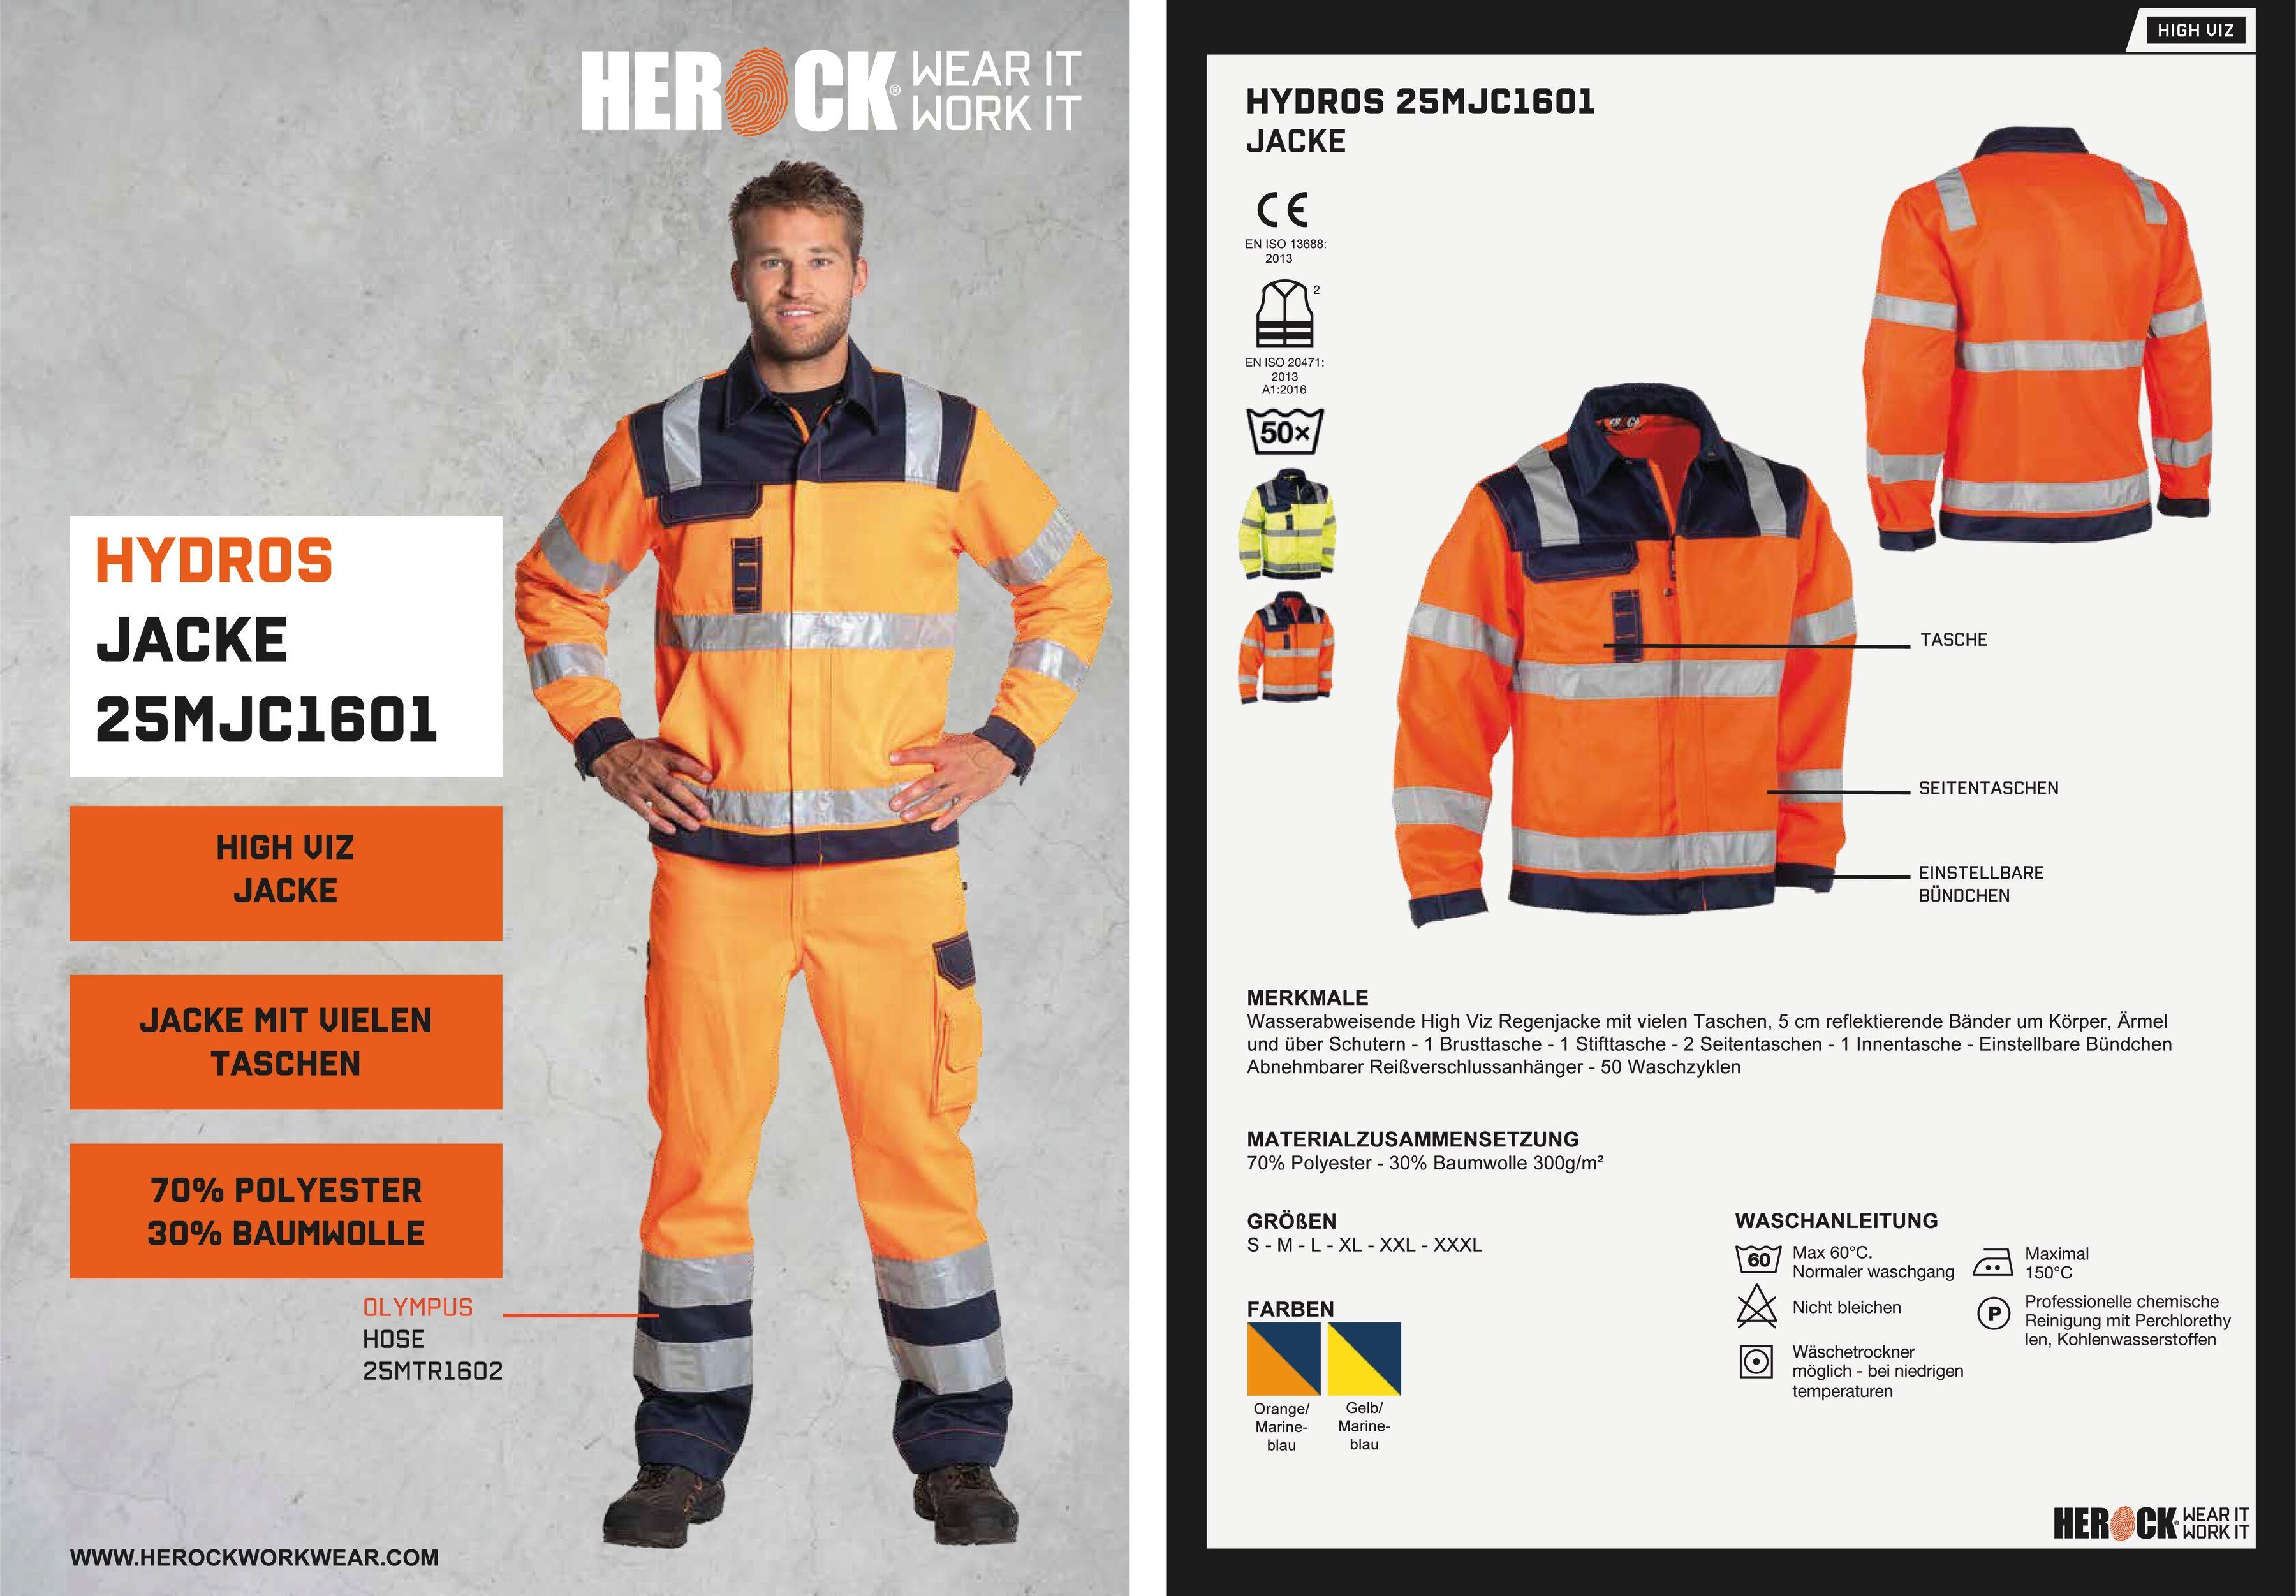 Arbeitsjacke Bündchen, Hochwertig, 5cm eintellbare Hochsichtbar Taschen, orange 5 reflektierende Hydros Bänder Jacke Herock